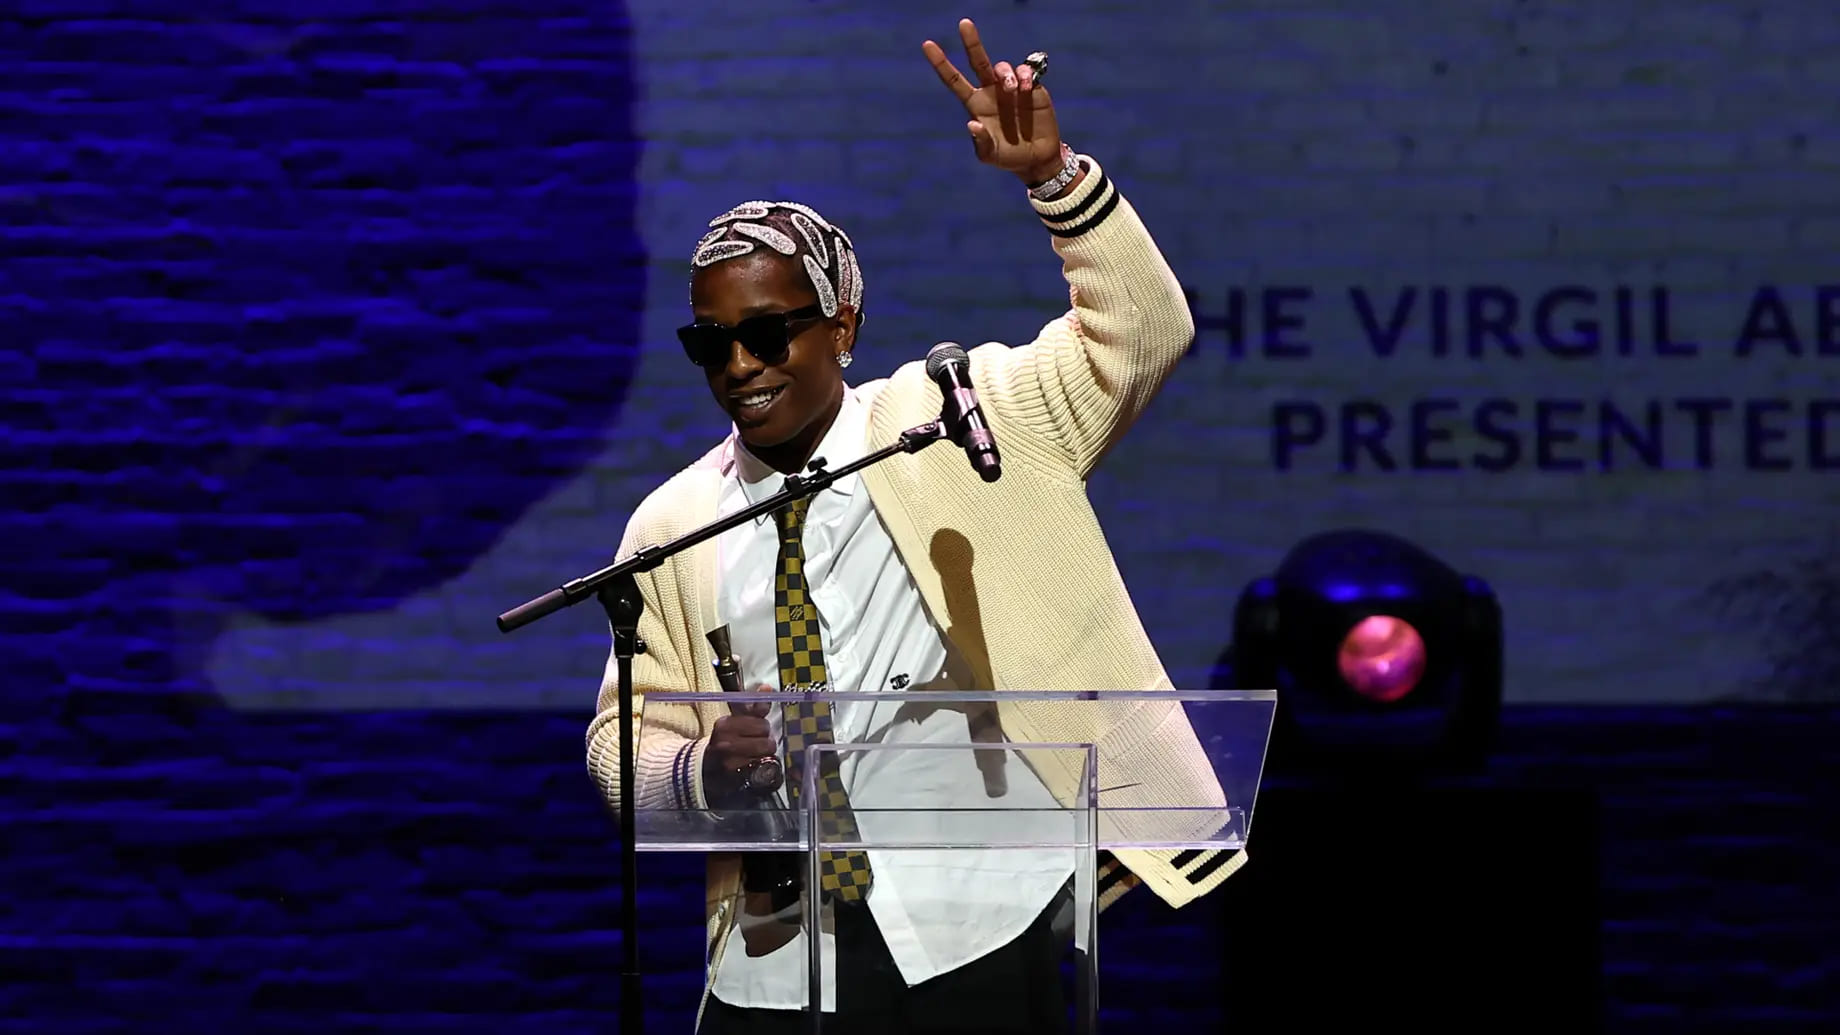 LVMH's Virgil Abloh Award To Be Given At Harlem's Fashion Row –